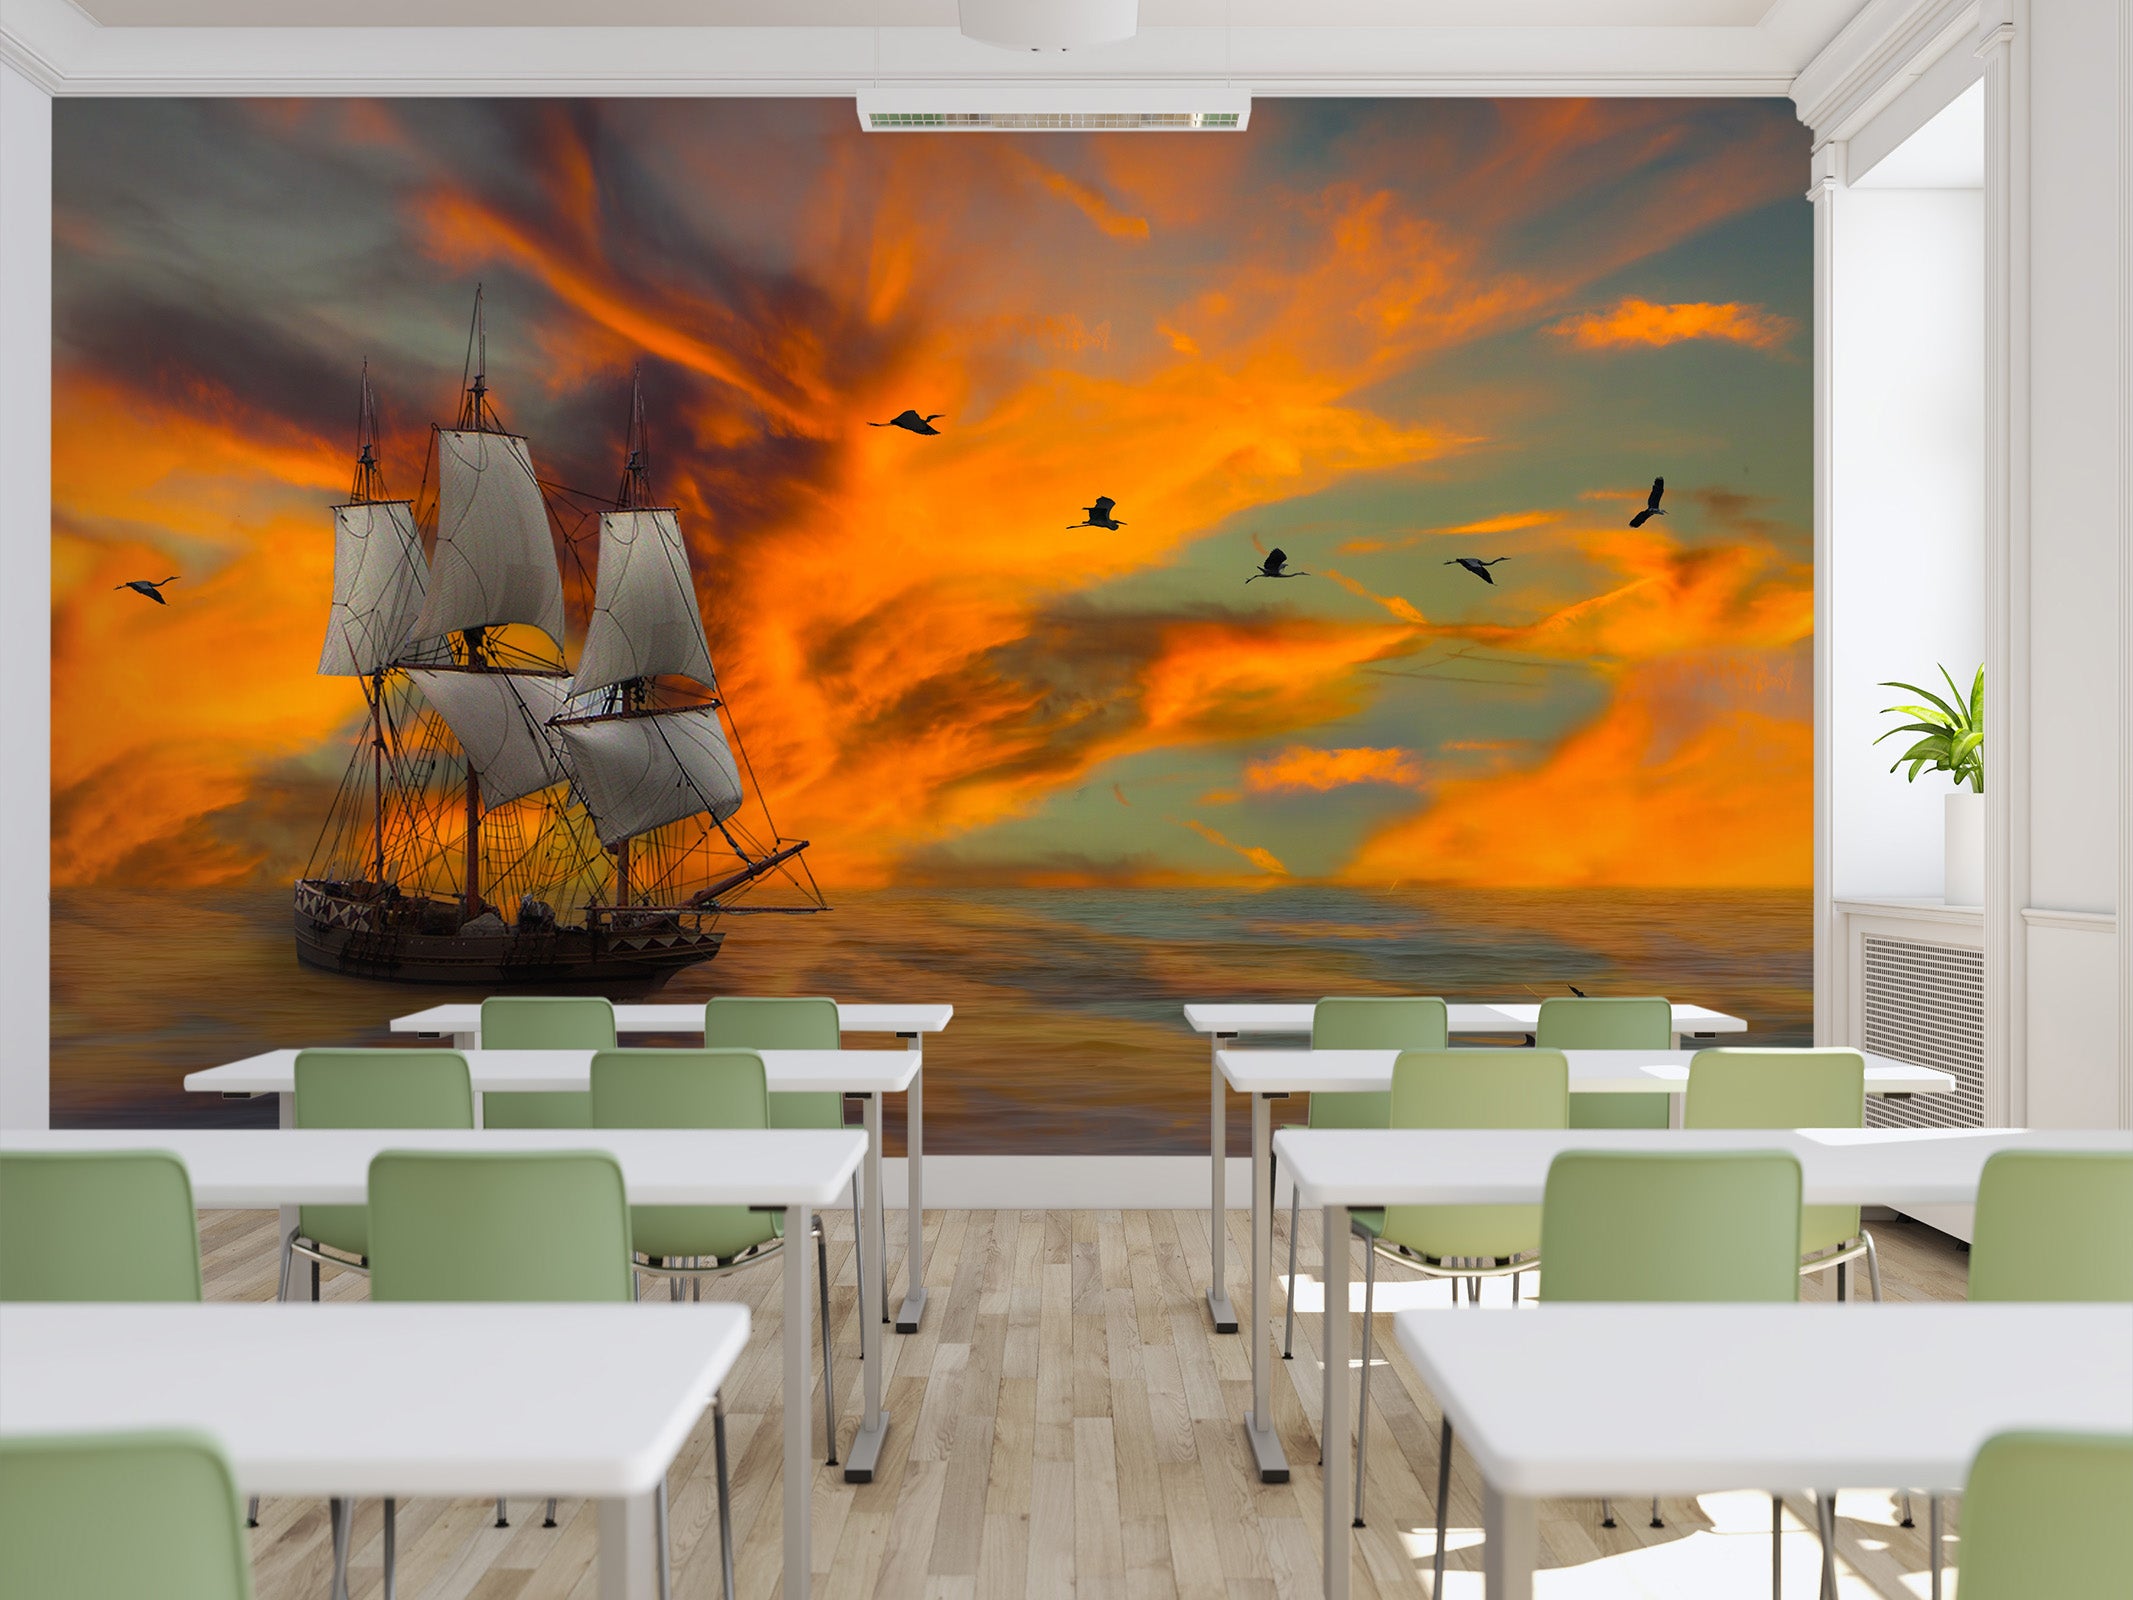 3D Sunset Boat 174 Wall Murals